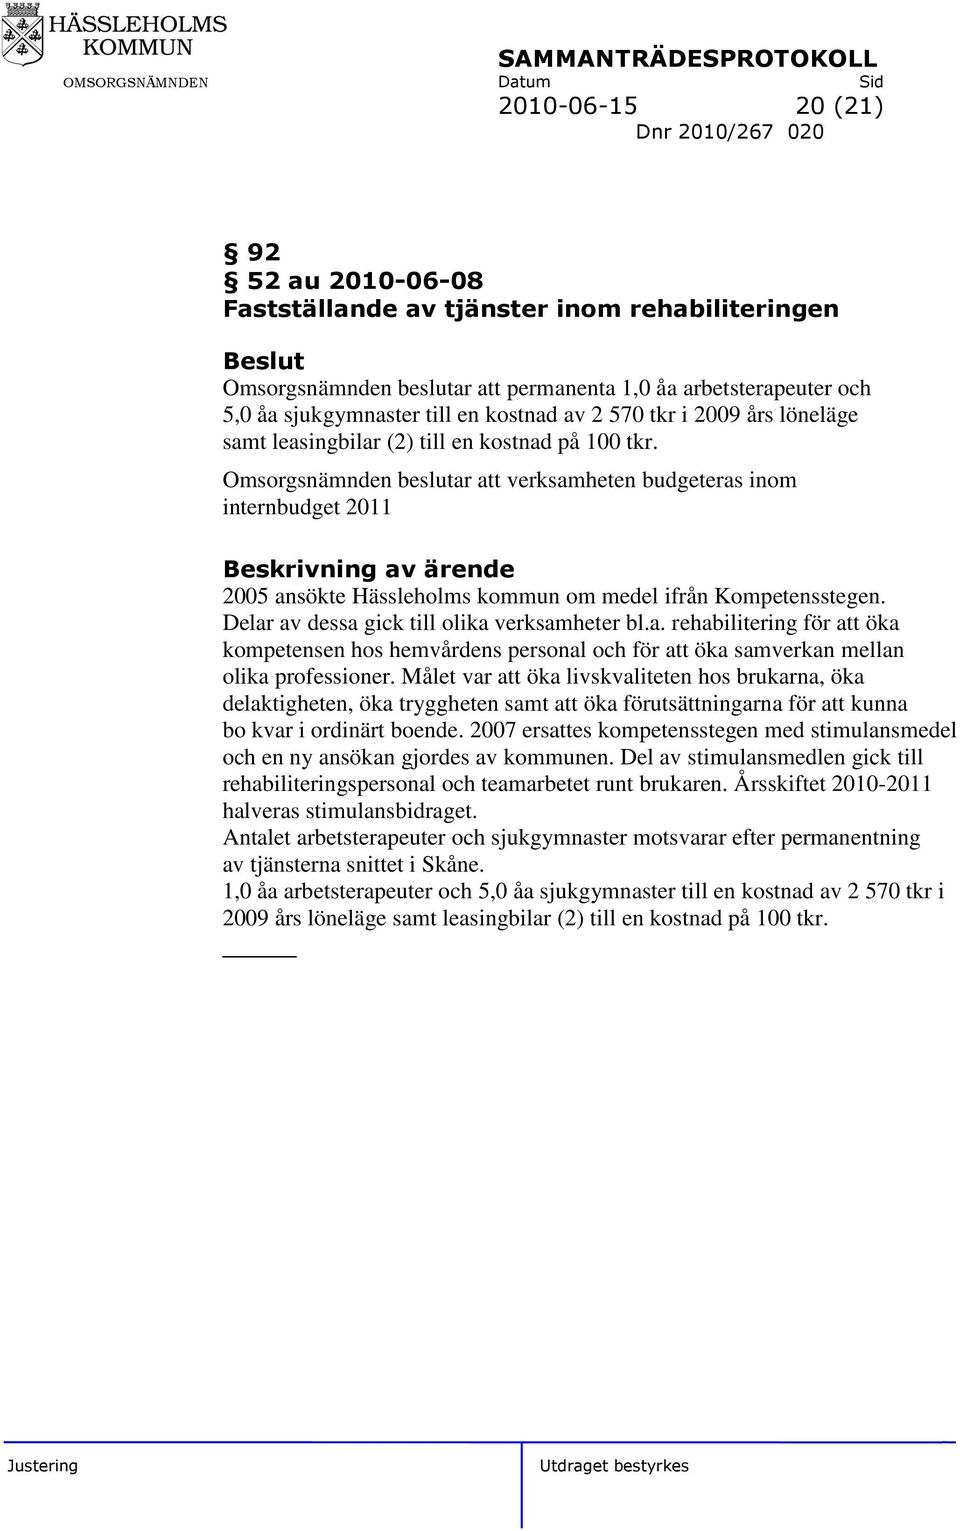 Omsorgsnämnden beslutar att verksamheten budgeteras inom internbudget 2011 2005 ansökte Hässleholms kommun om medel ifrån Kompetensstegen. Delar av dessa gick till olika verksamheter bl.a. rehabilitering för att öka kompetensen hos hemvårdens personal och för att öka samverkan mellan olika professioner.